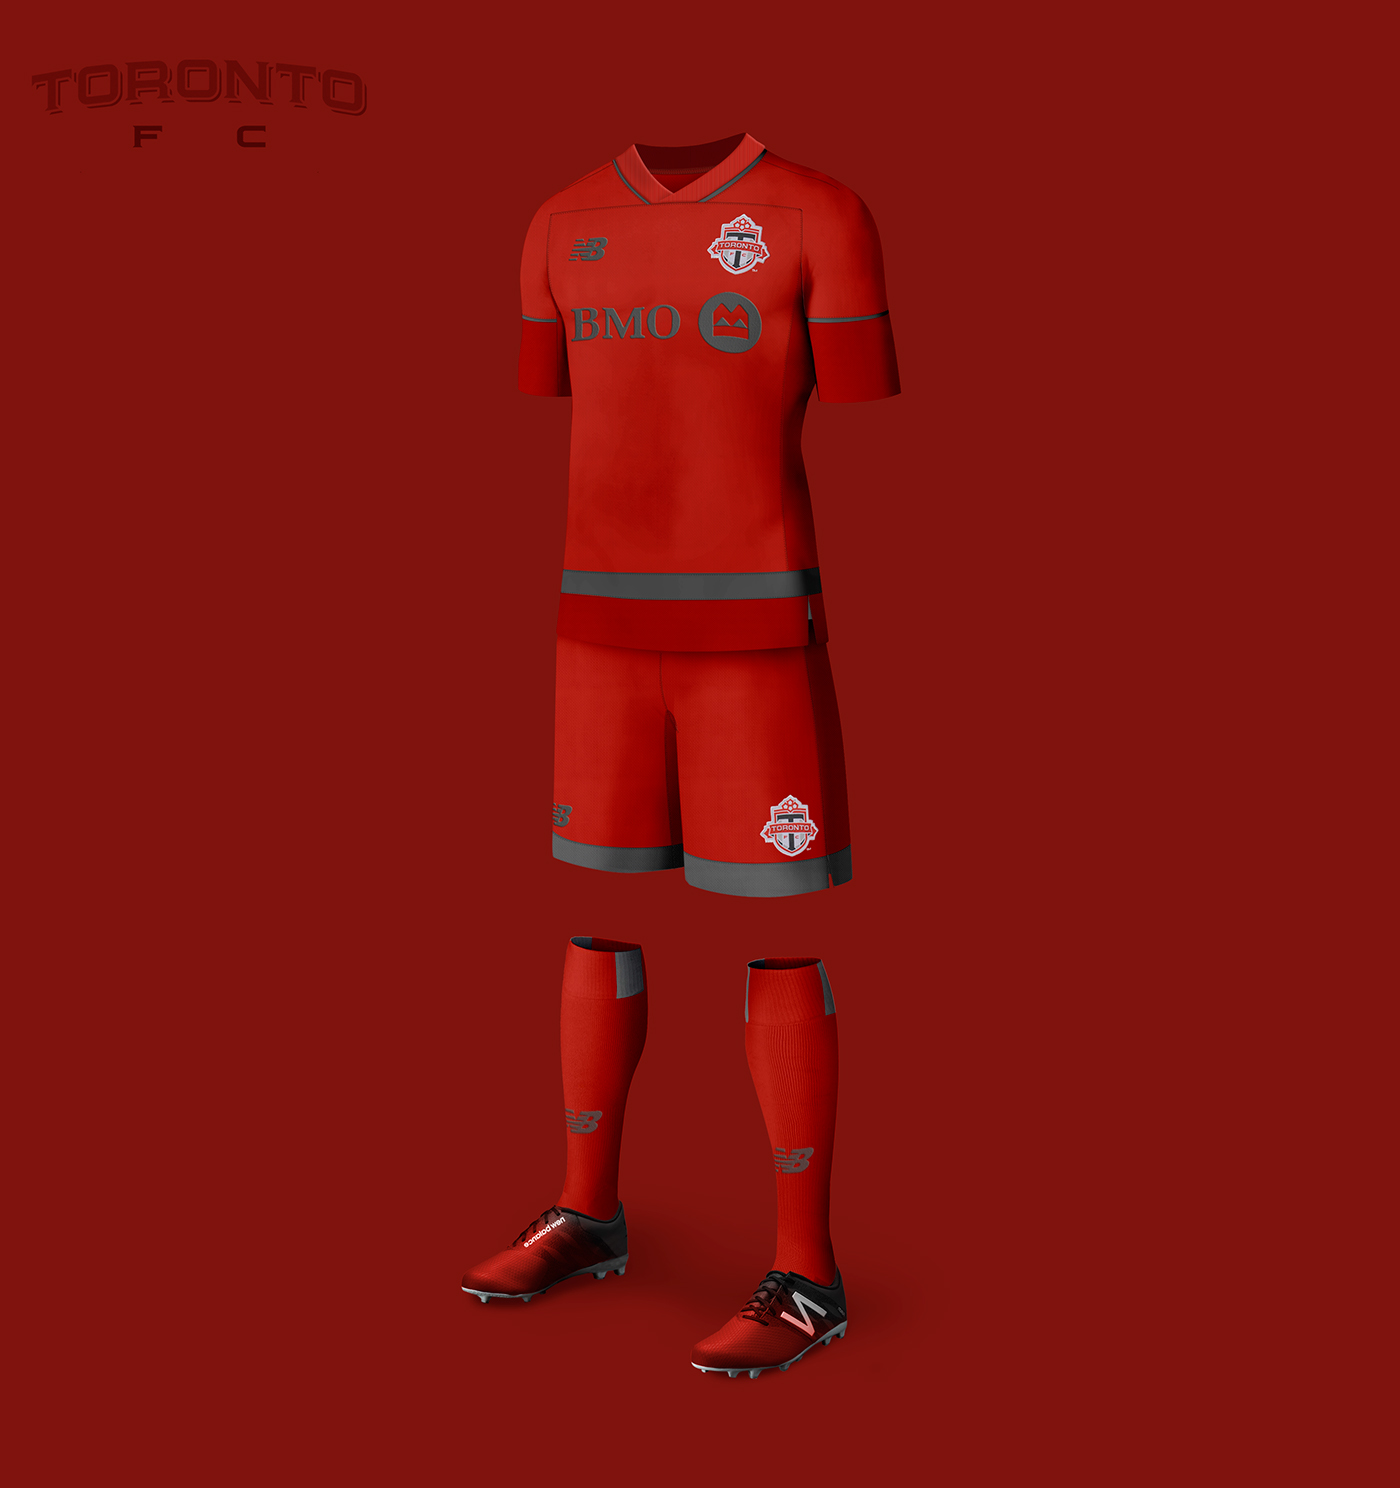 NY city kit ny redbulls kit mls kits Nerea Palacios jersey football jersey Under Armour New Balance equipaciones Futbol soccer mls Nike